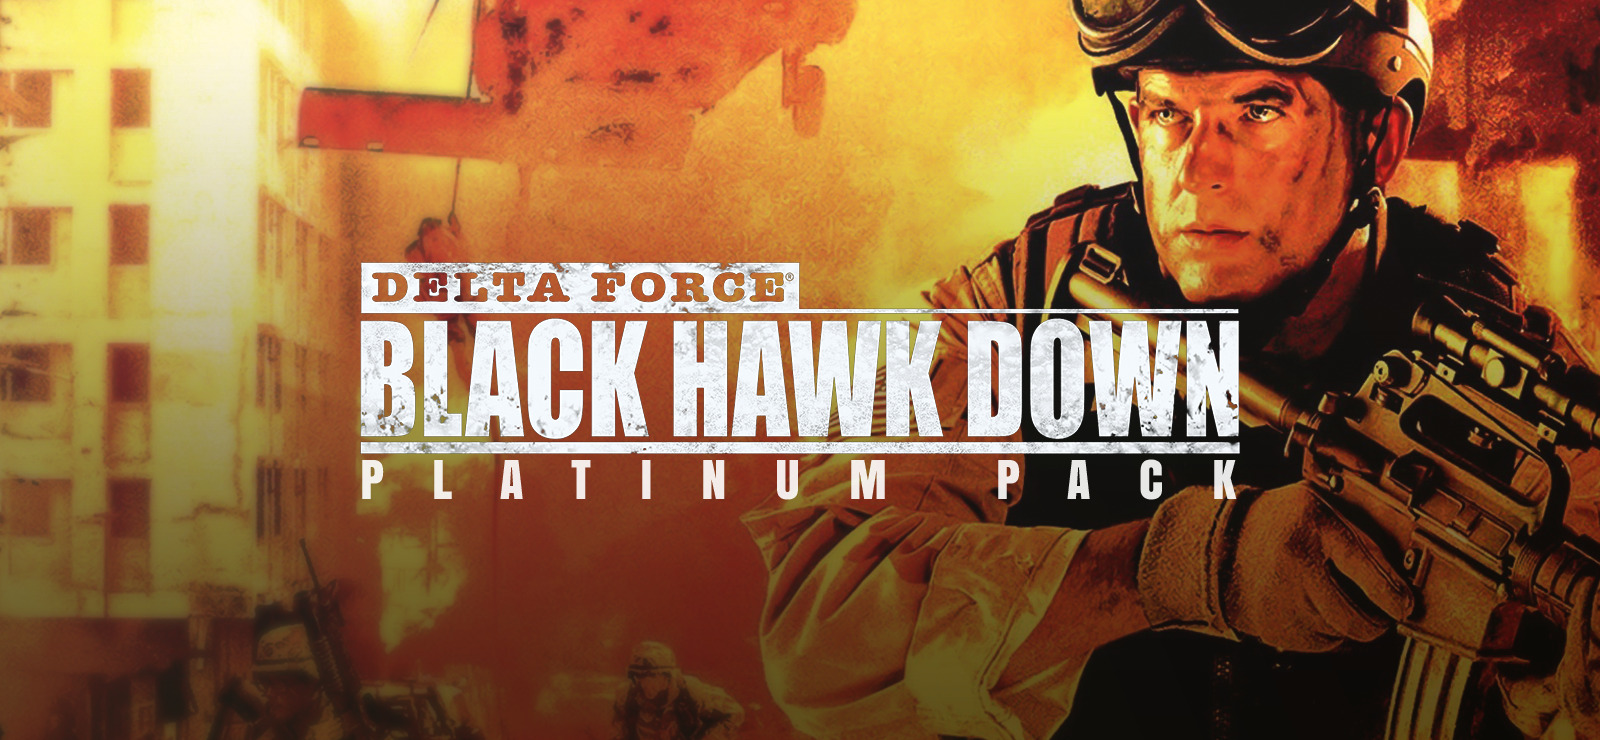 Delta Force Black Hawk Down Platinum Pack on